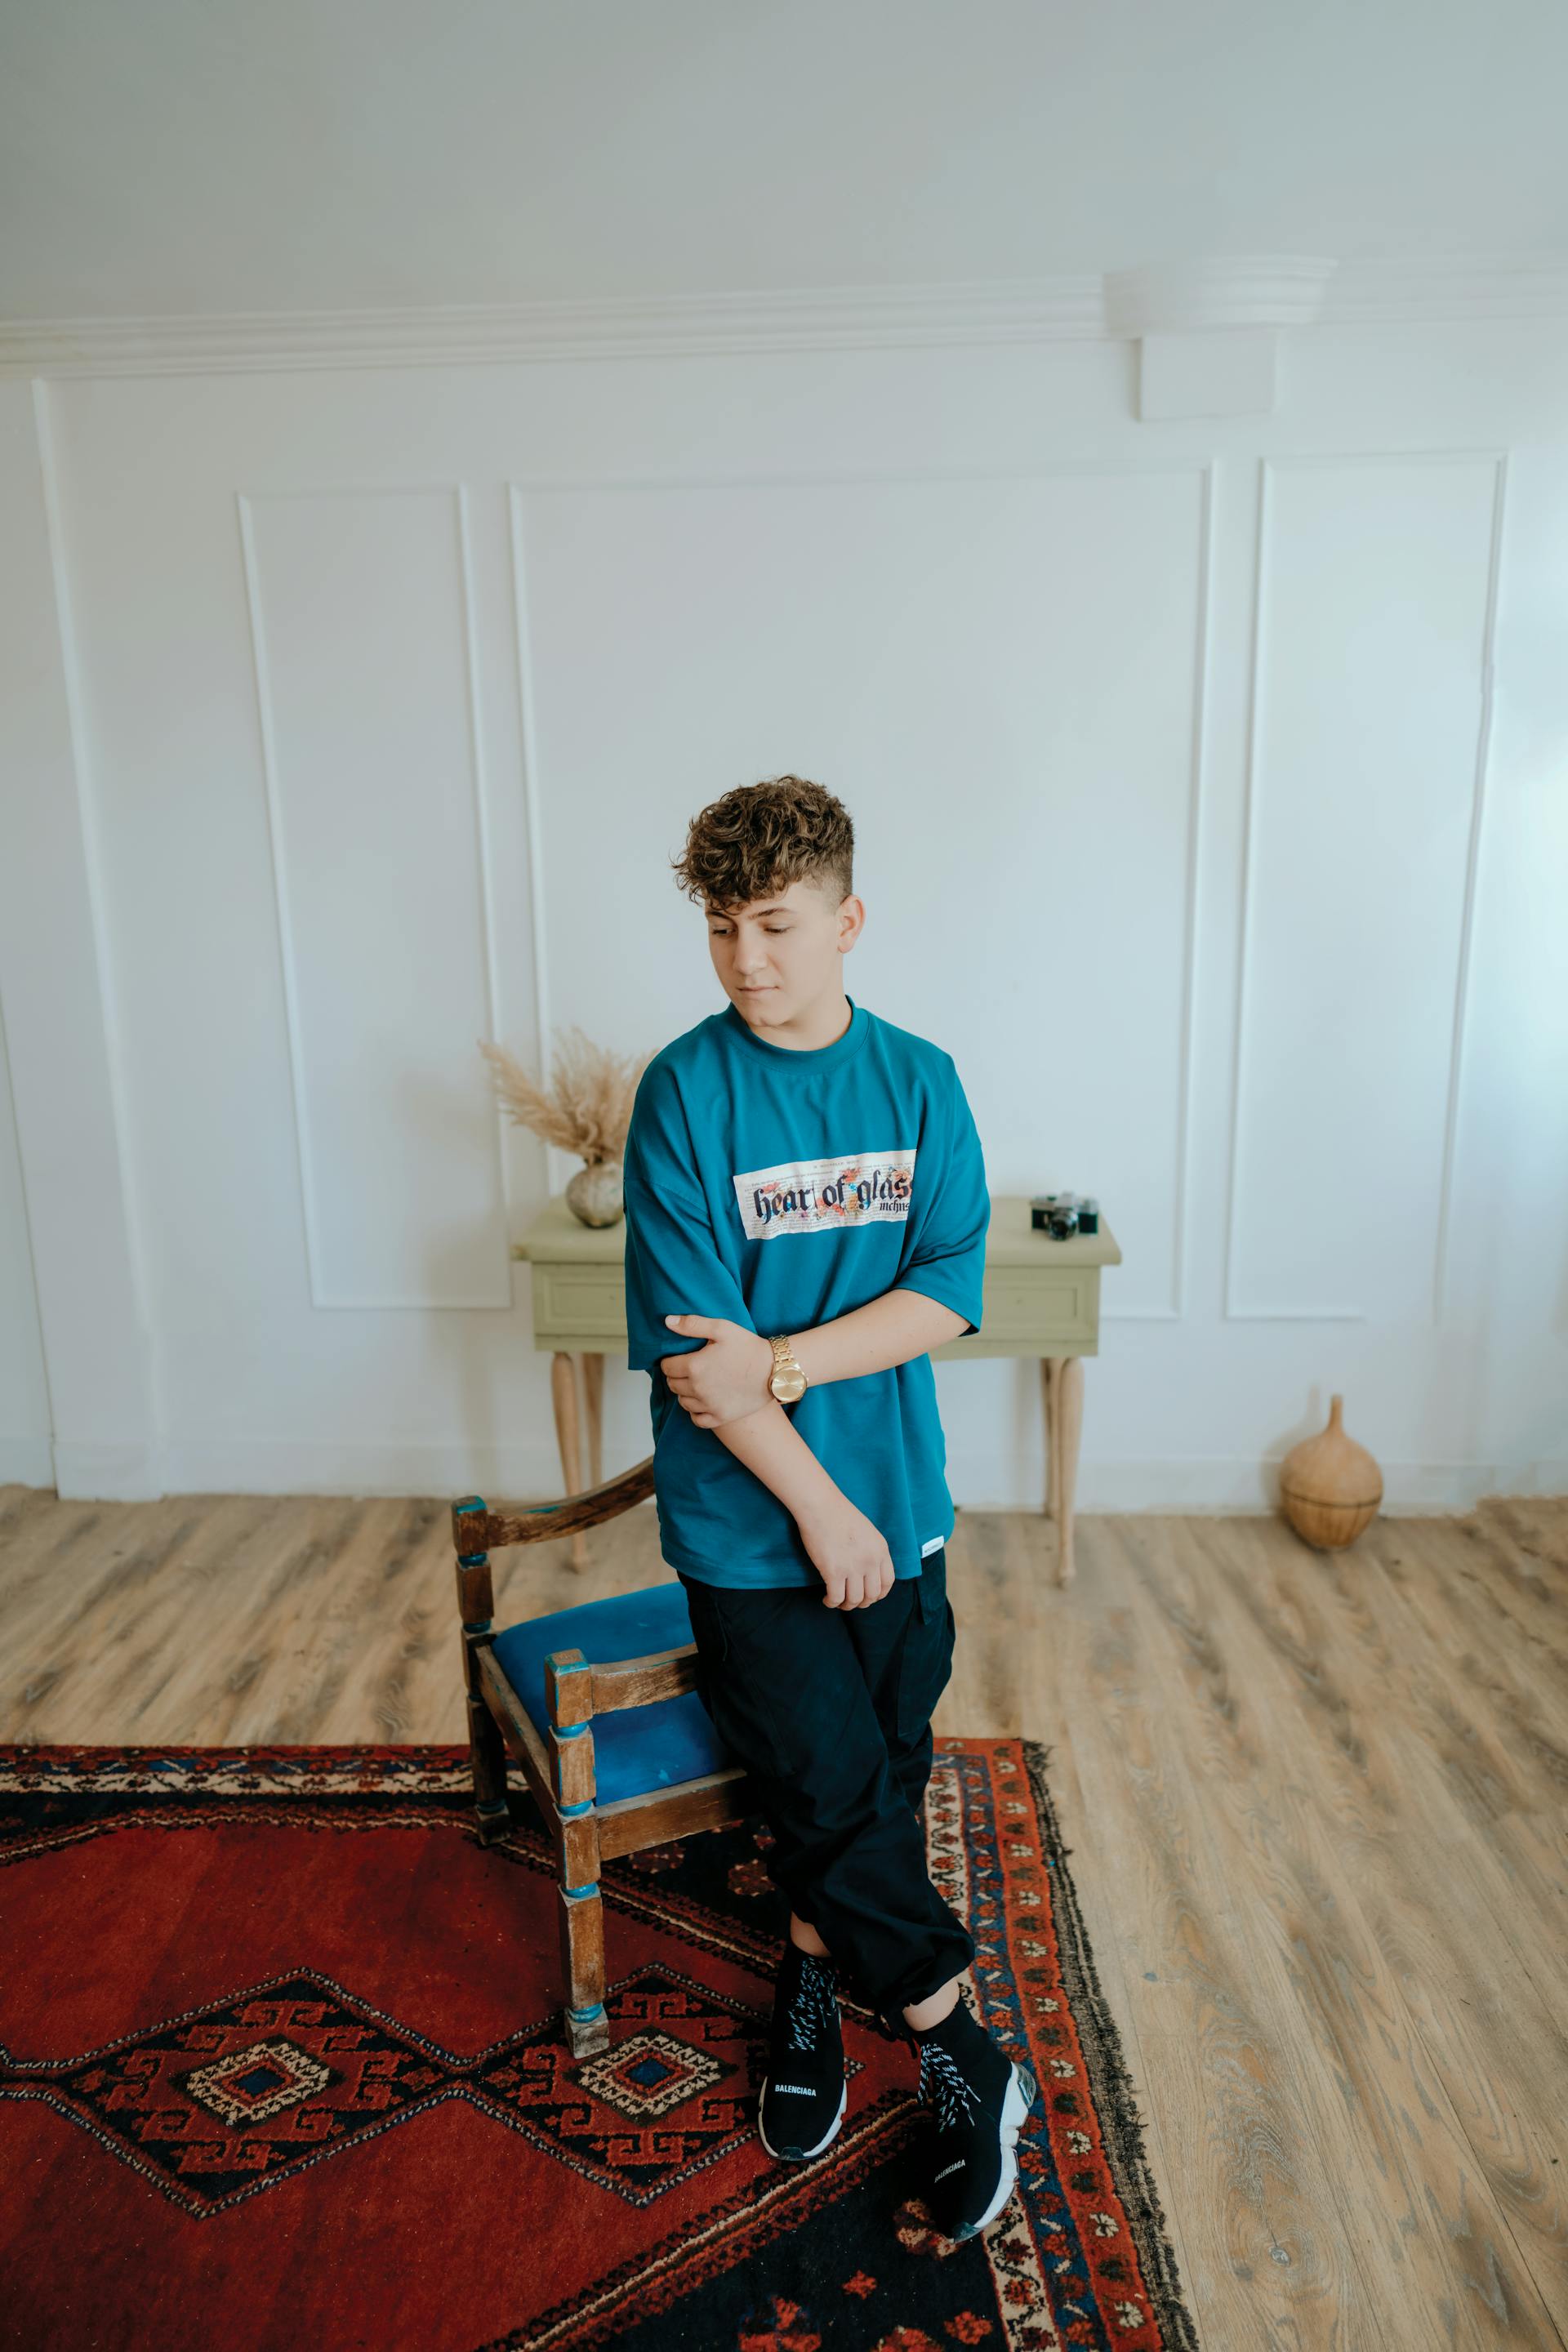 Un adolescent adossé à une chaise | Source : Pexels